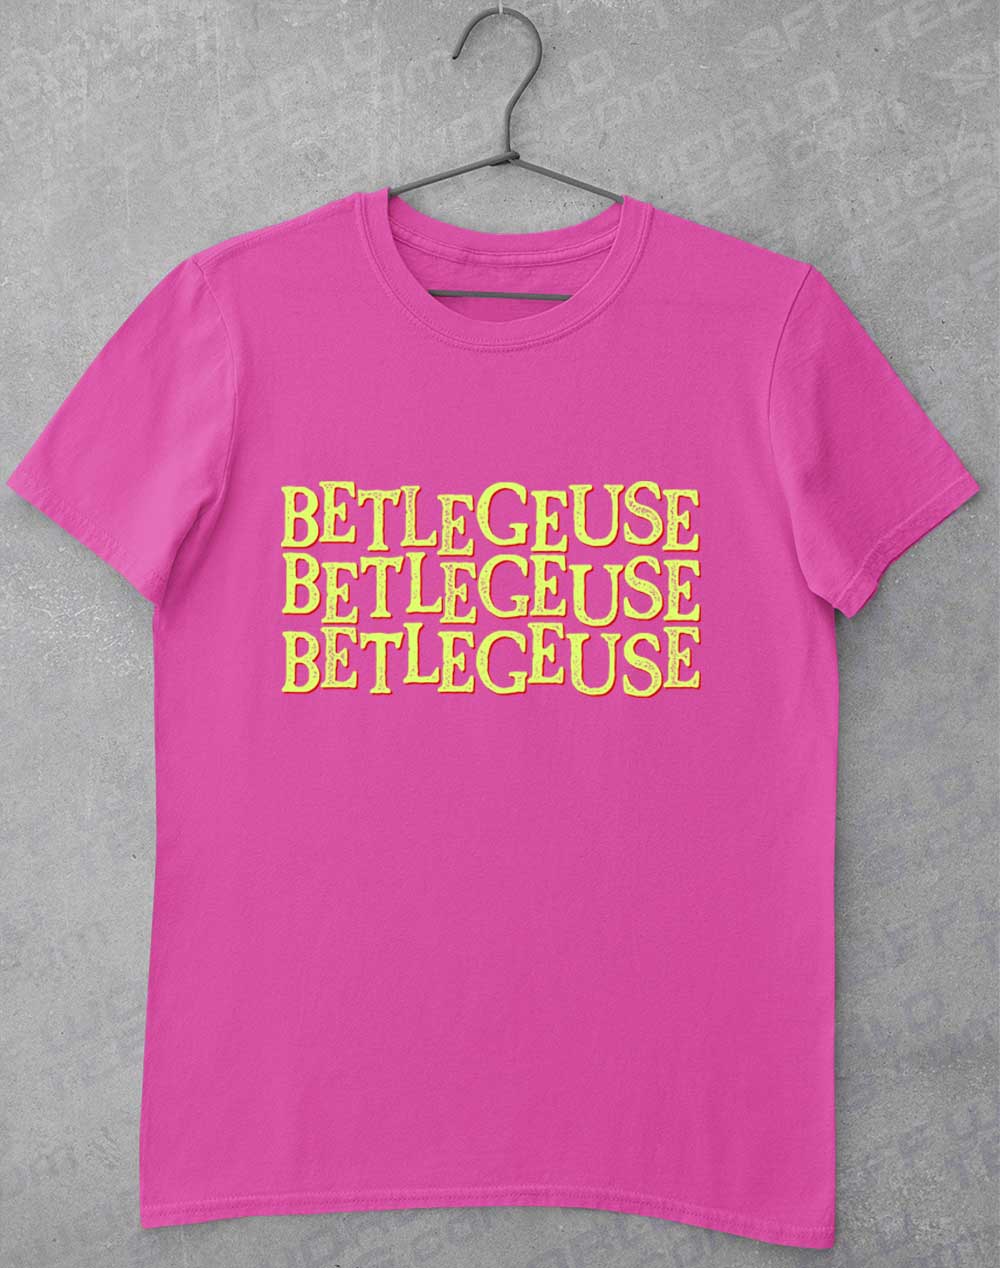 Azalea - Betelgeuse Betelgeuse Betelgeuse T-Shirt